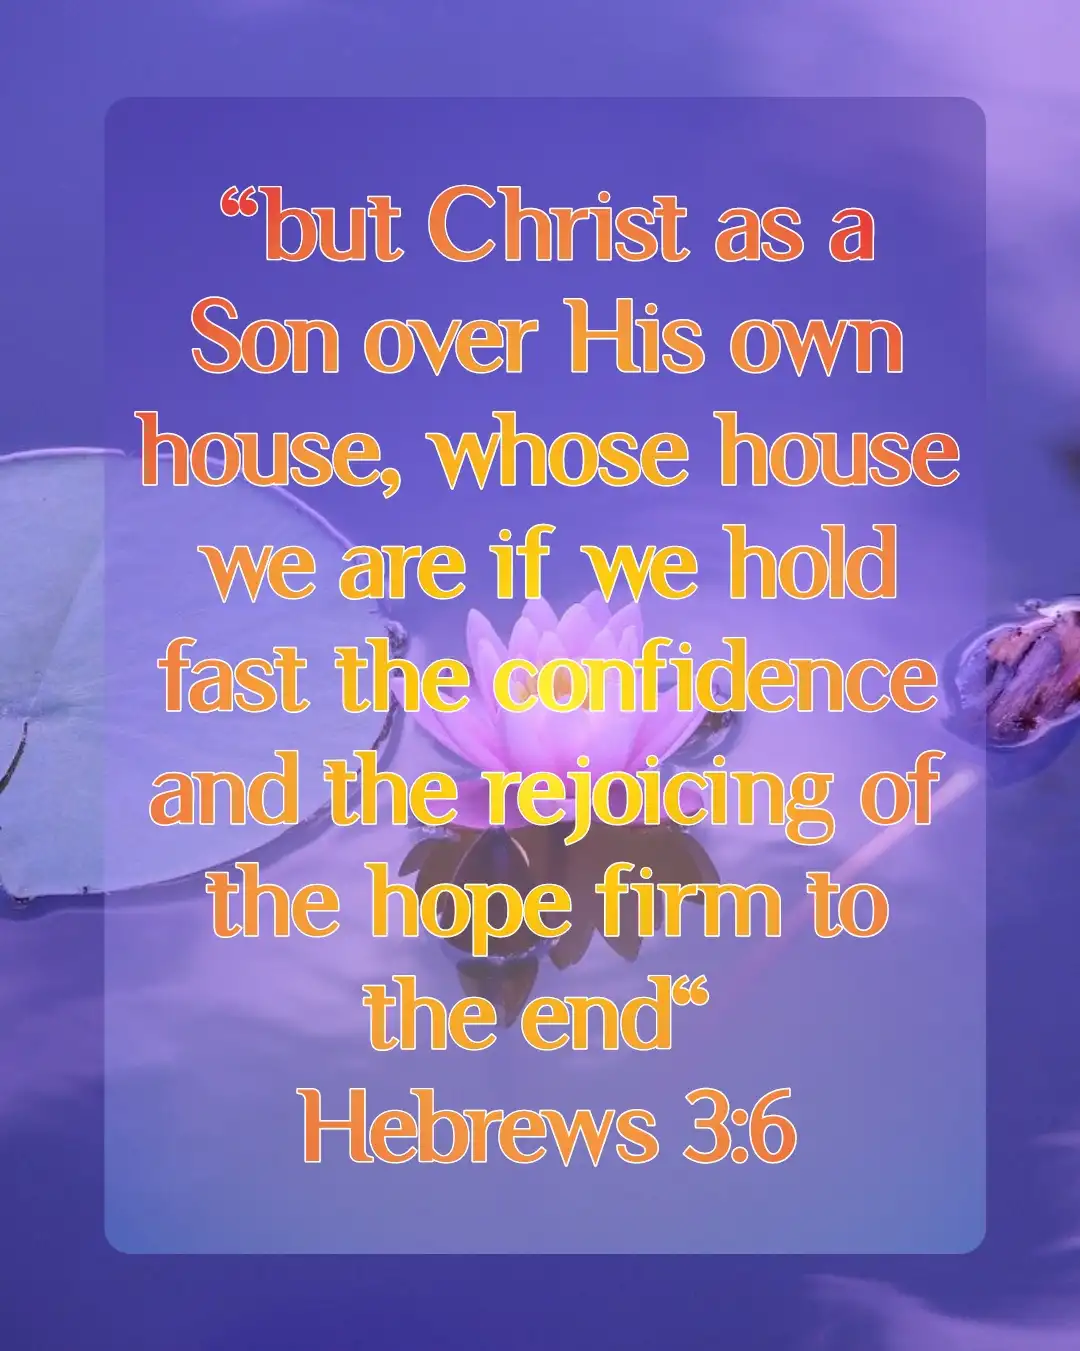 today bible verse (Hebrews 3:6)